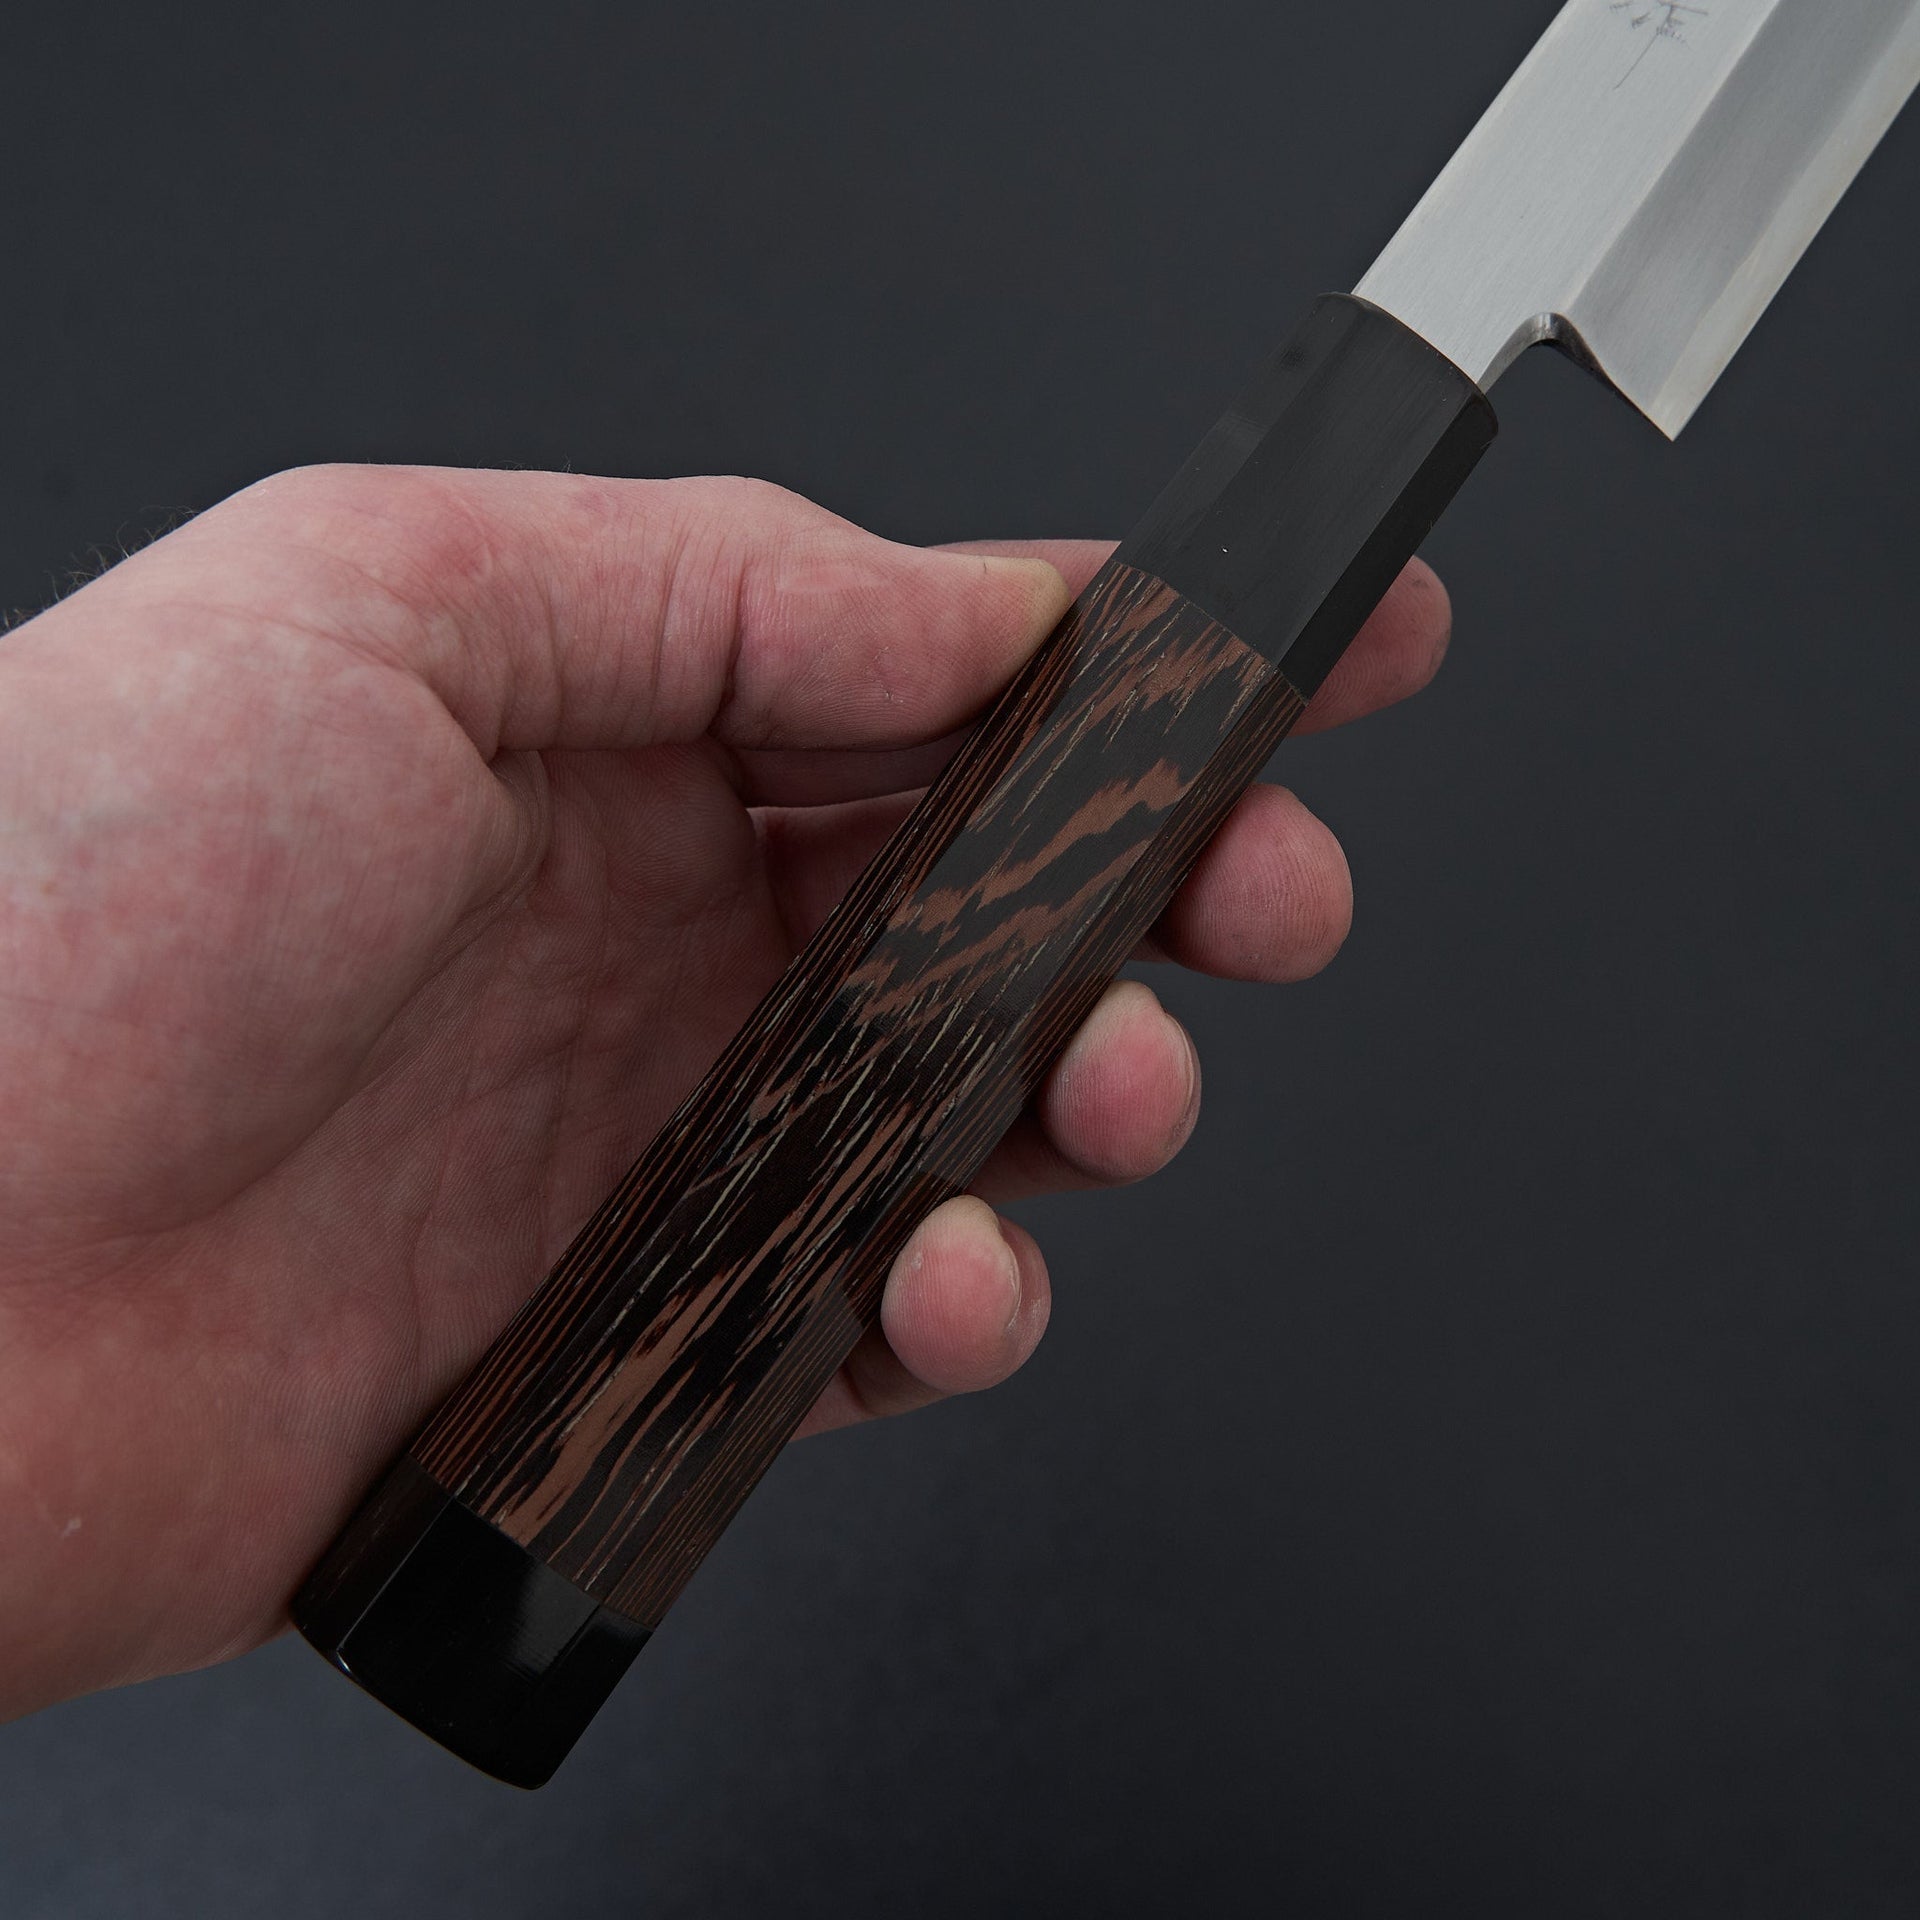 Sakai Takayuki Zangetsu Ginsan Sakimaru 300mm-Knife-Sakai Takayuki-Carbon Knife Co